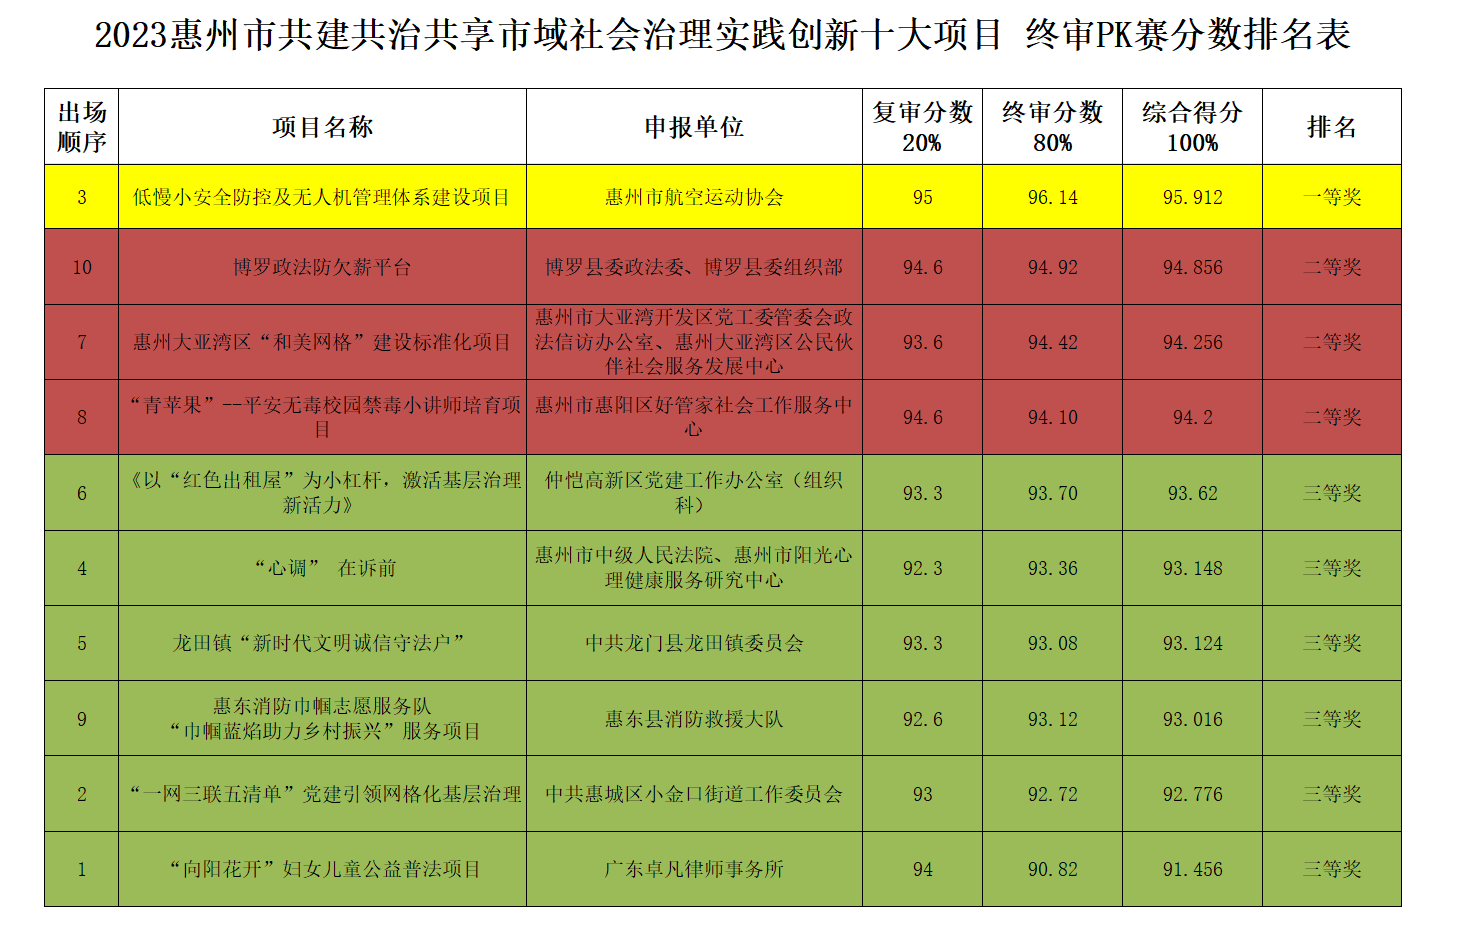 6、2023惠州市共建共治共享市域社会治理实践创新十大项目排名.png